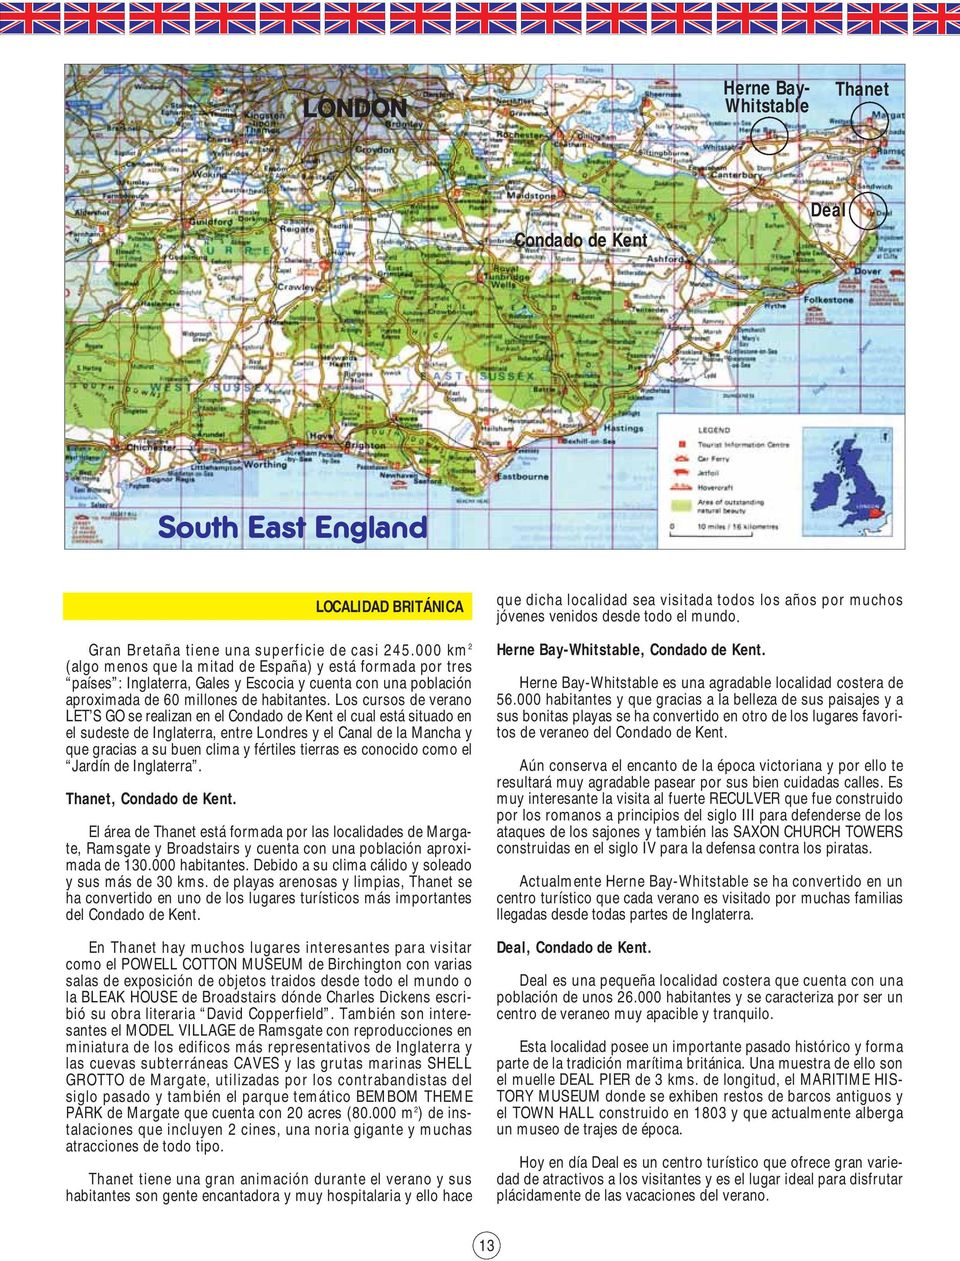 Los cursos de verano LET S GO se realizan en el Condado de Kent el cual está situado en el sudeste de Inglaterra, entre Londres y el Canal de la Mancha y que gracias a su buen clima y fértiles